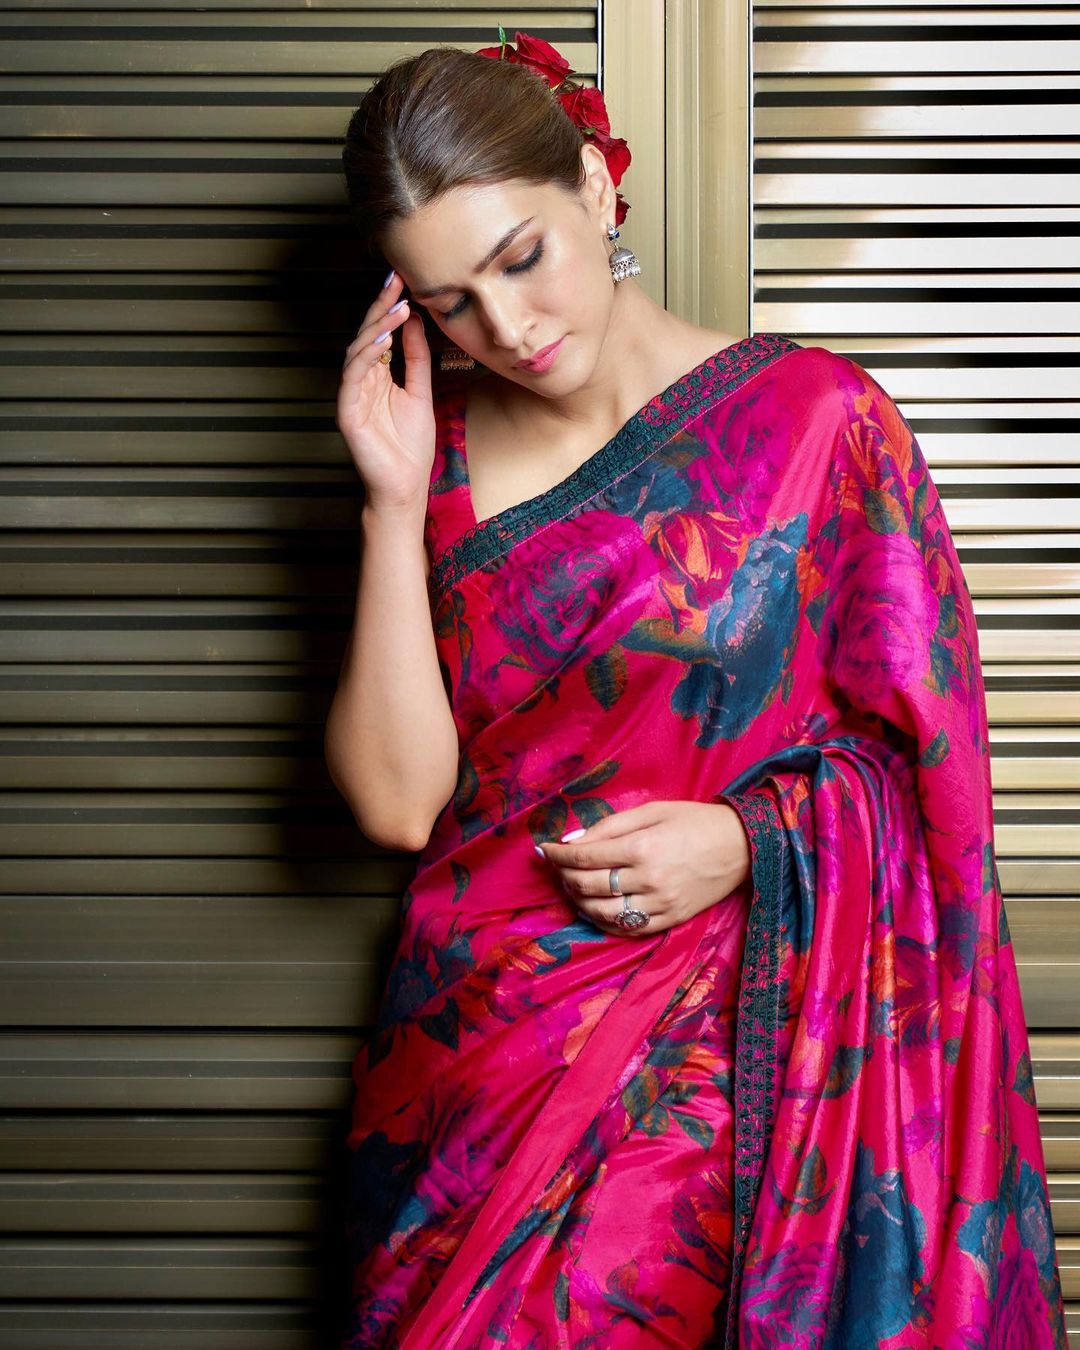 Kriti Sanon looks pretty in the floral-printed saree